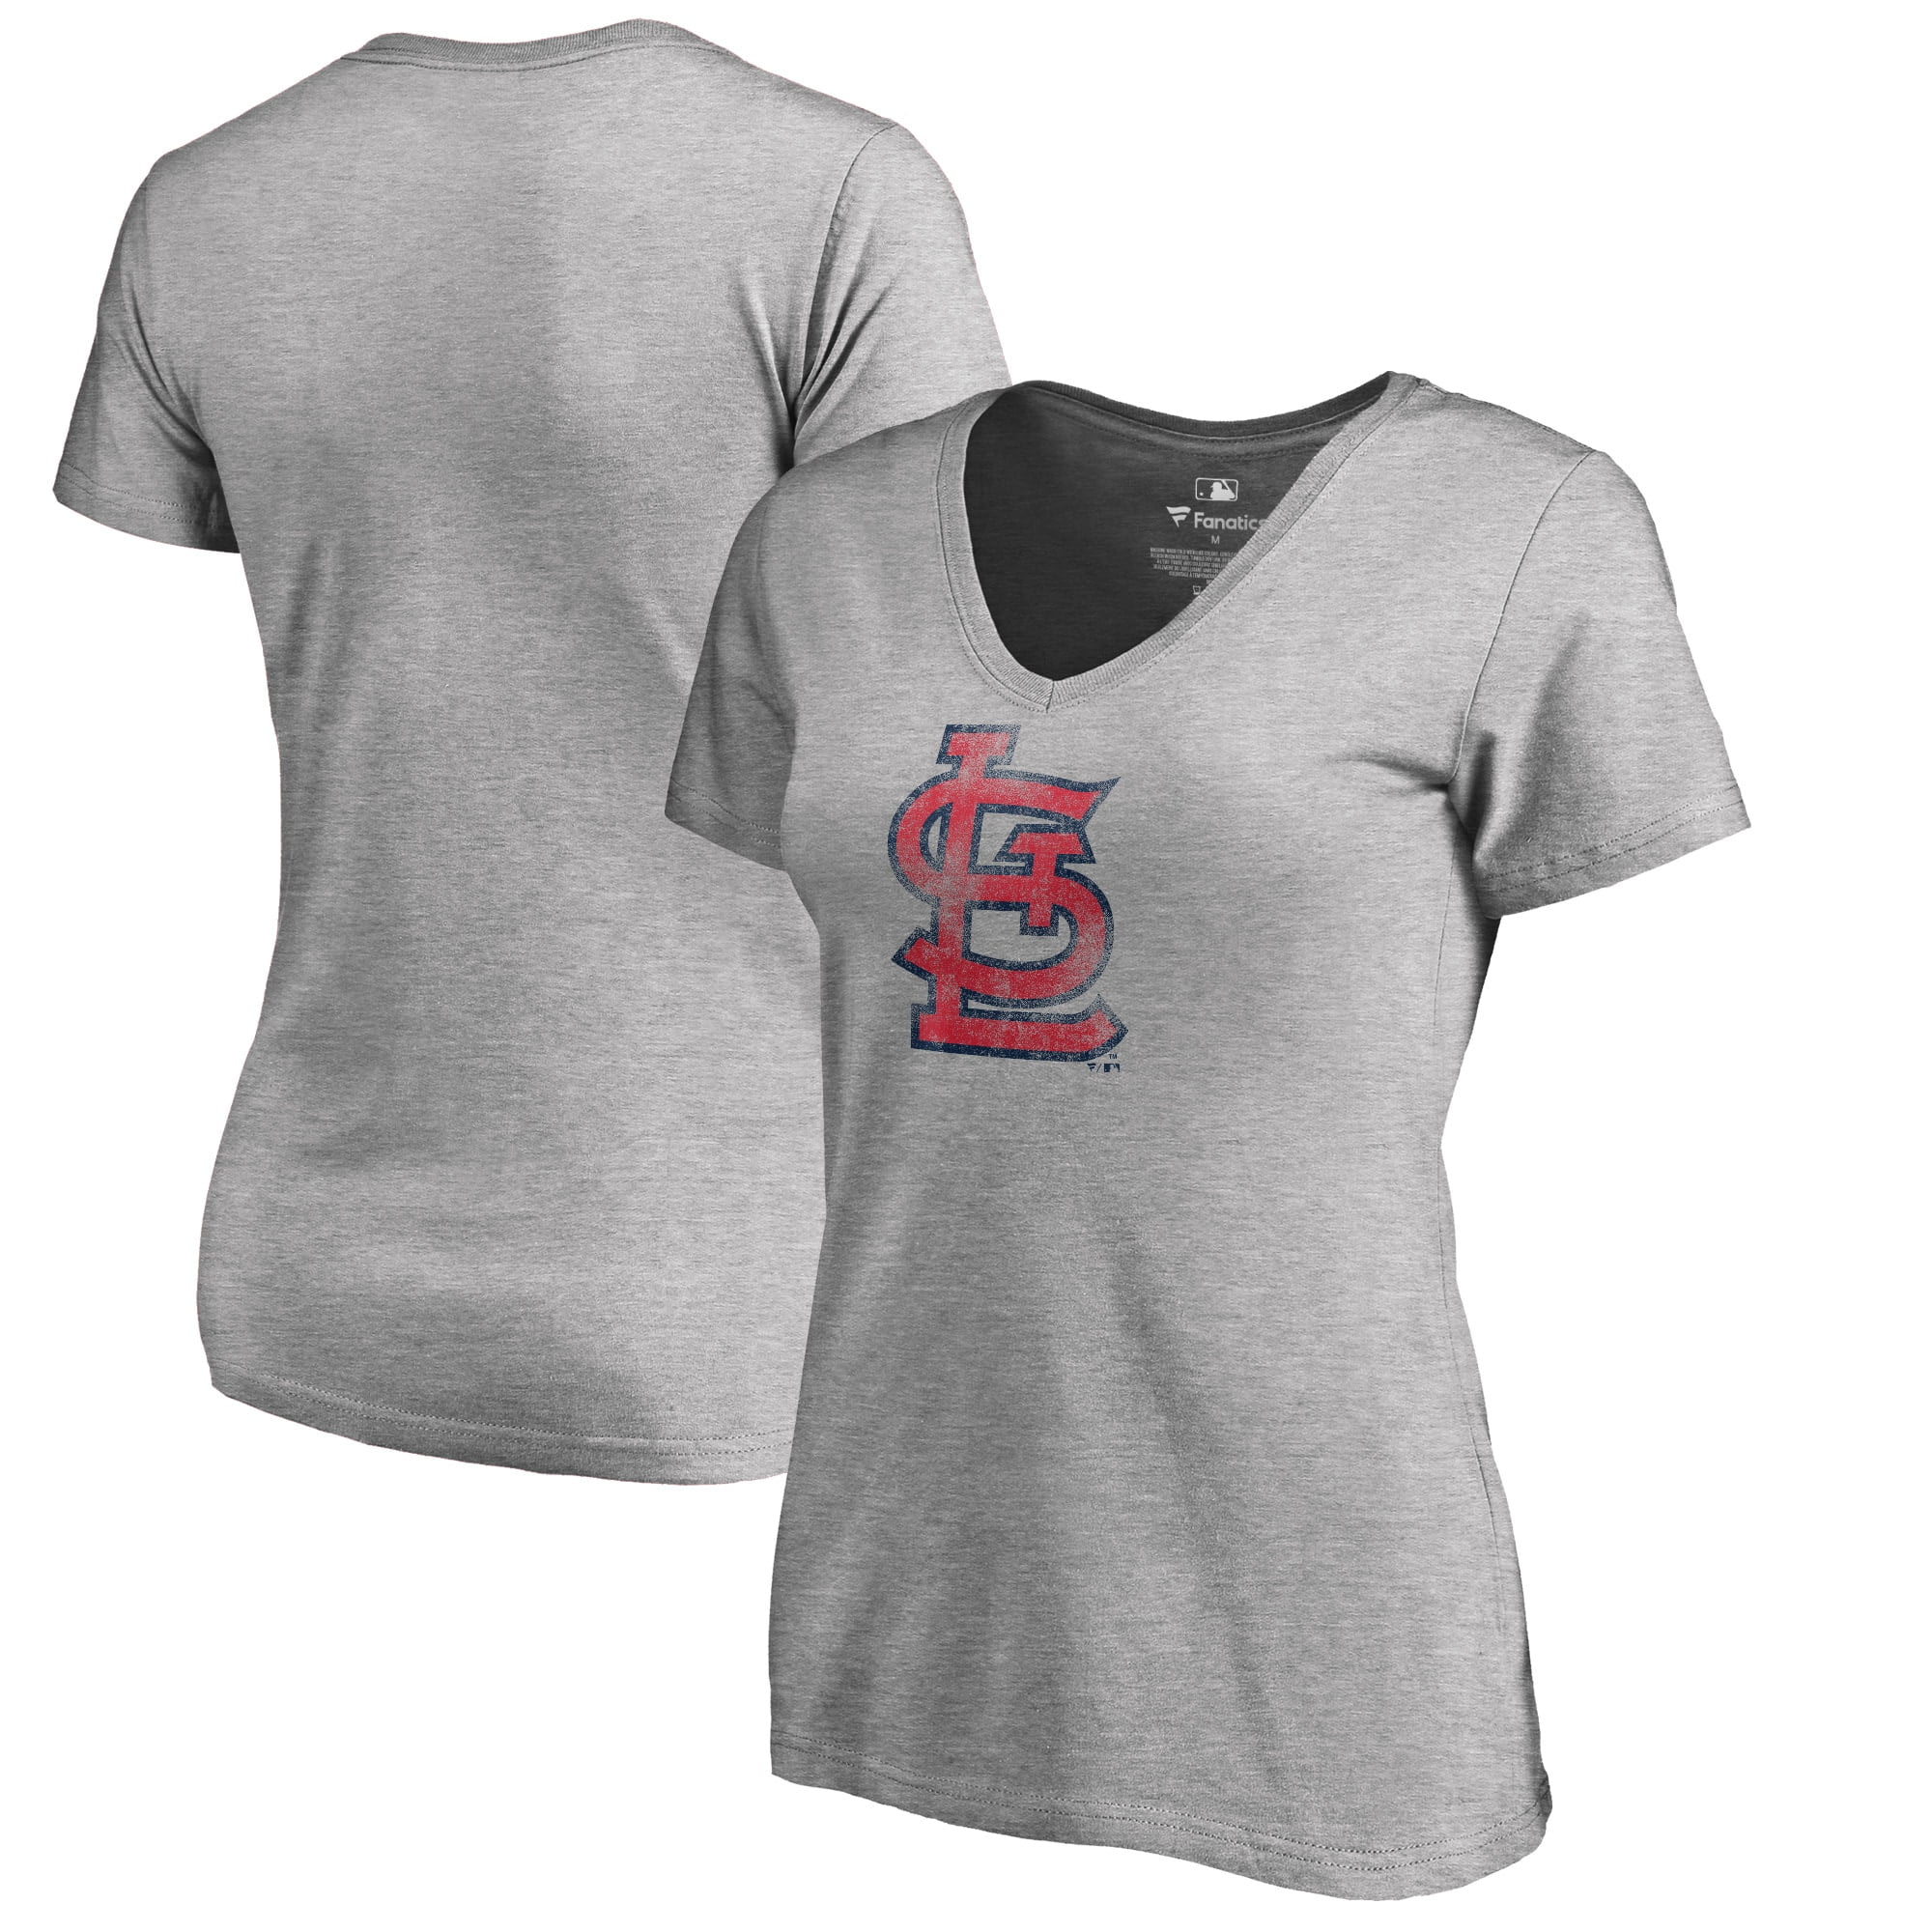 women's plus size st louis cardinals shirts